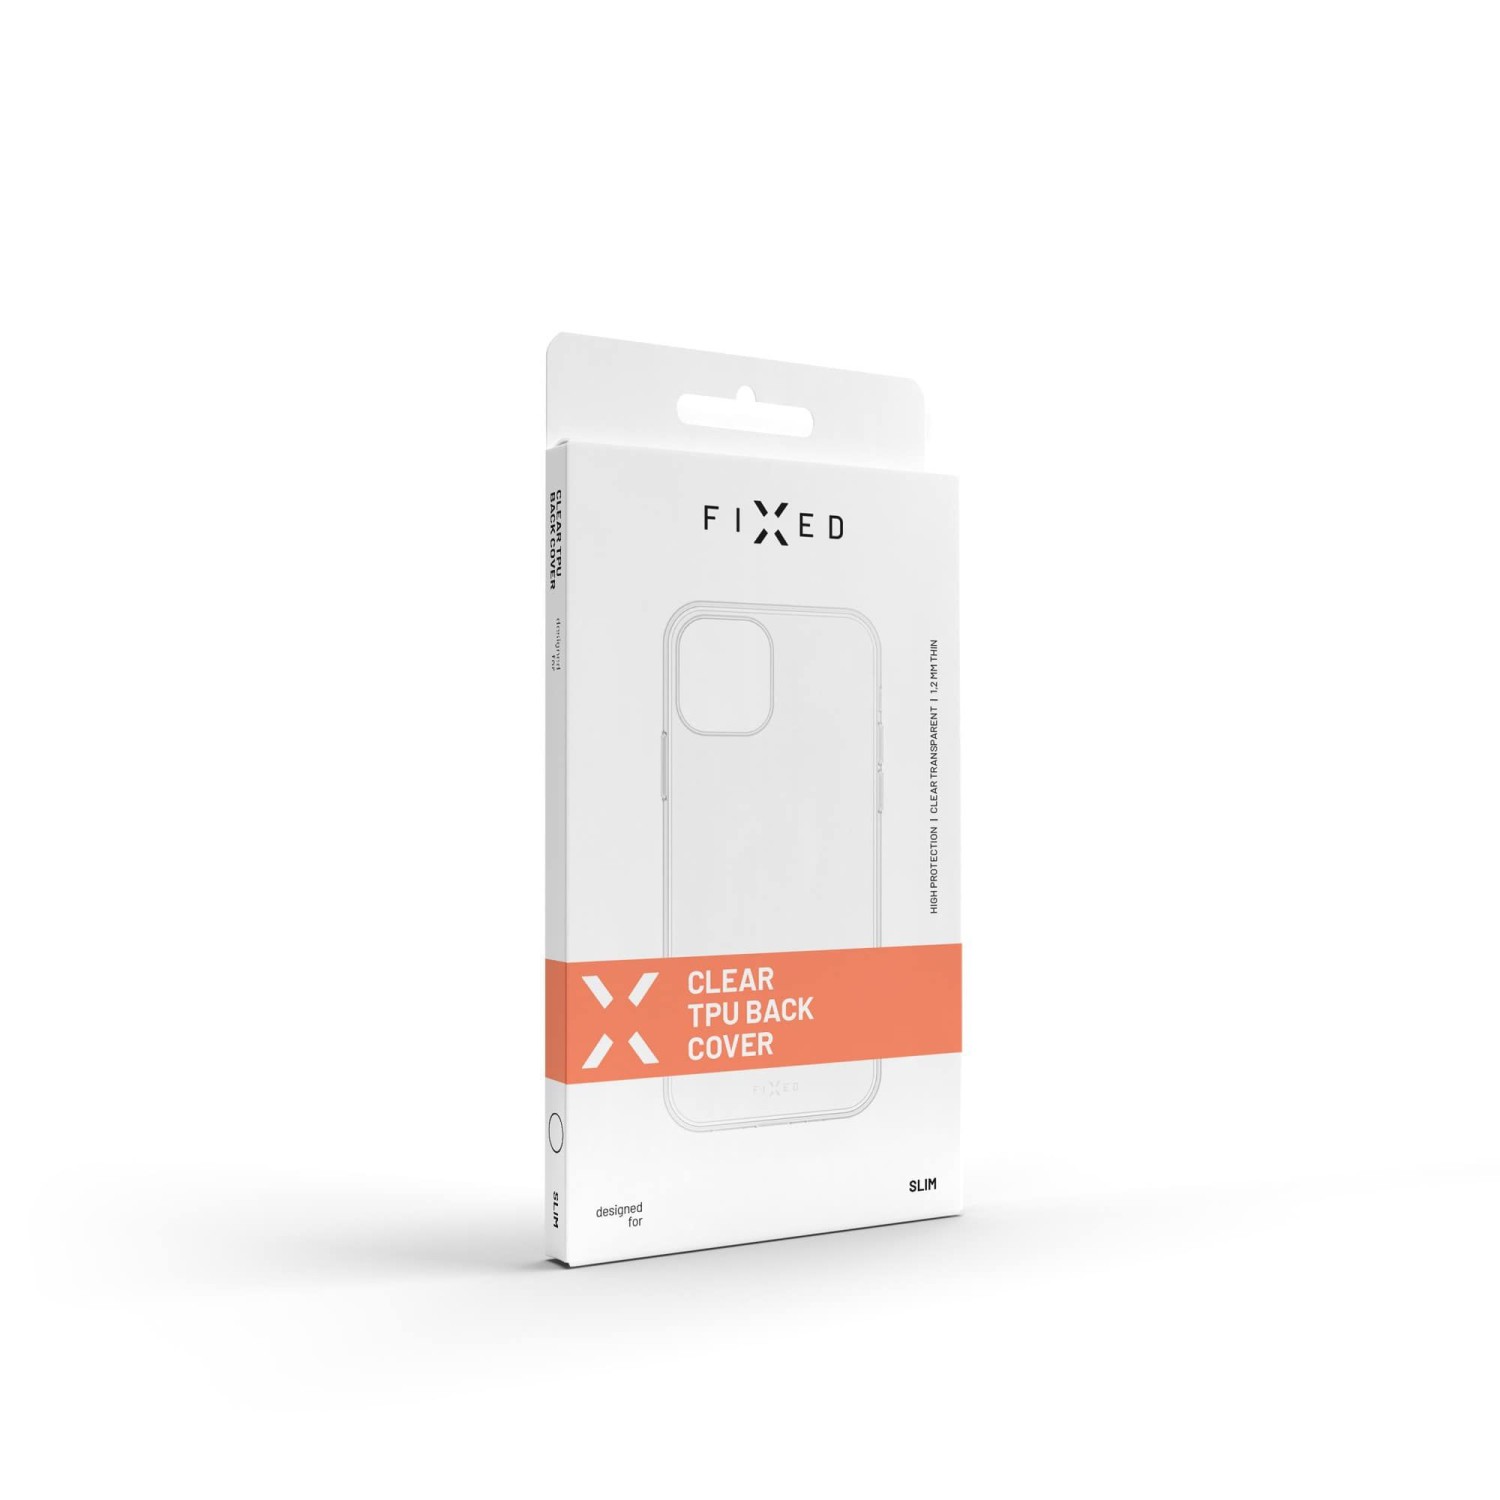 Silikonové pouzdro FIXED pro Nokia C2 2nd Edition, čirá